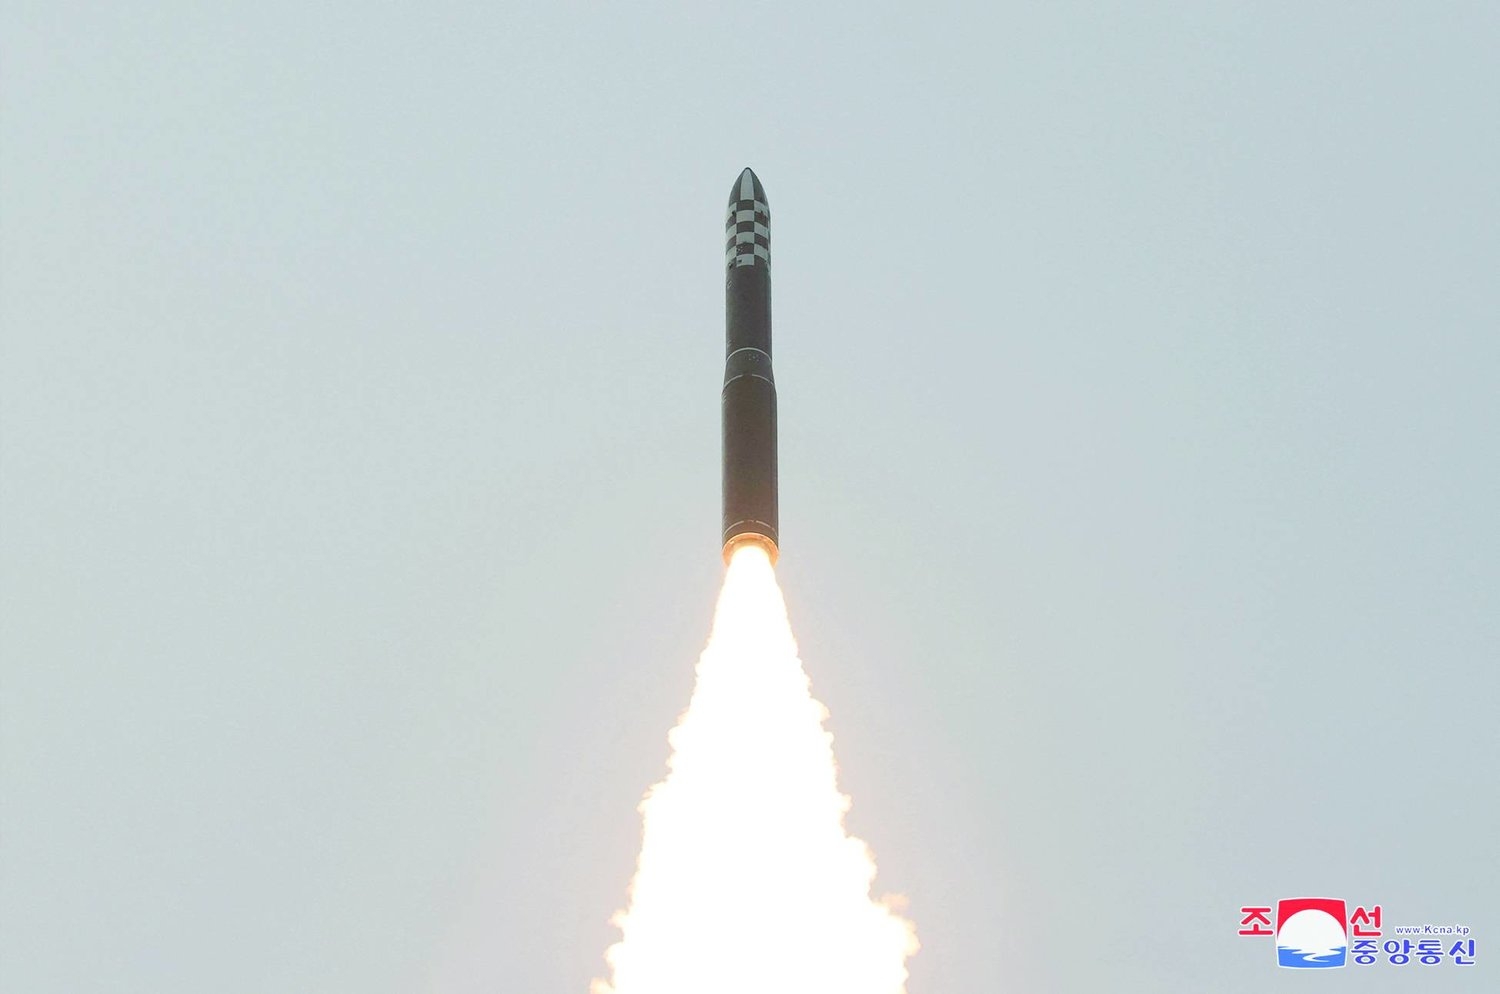 كوريا الشمالية تطلق «صاروخاً بالستياً غير محدد»